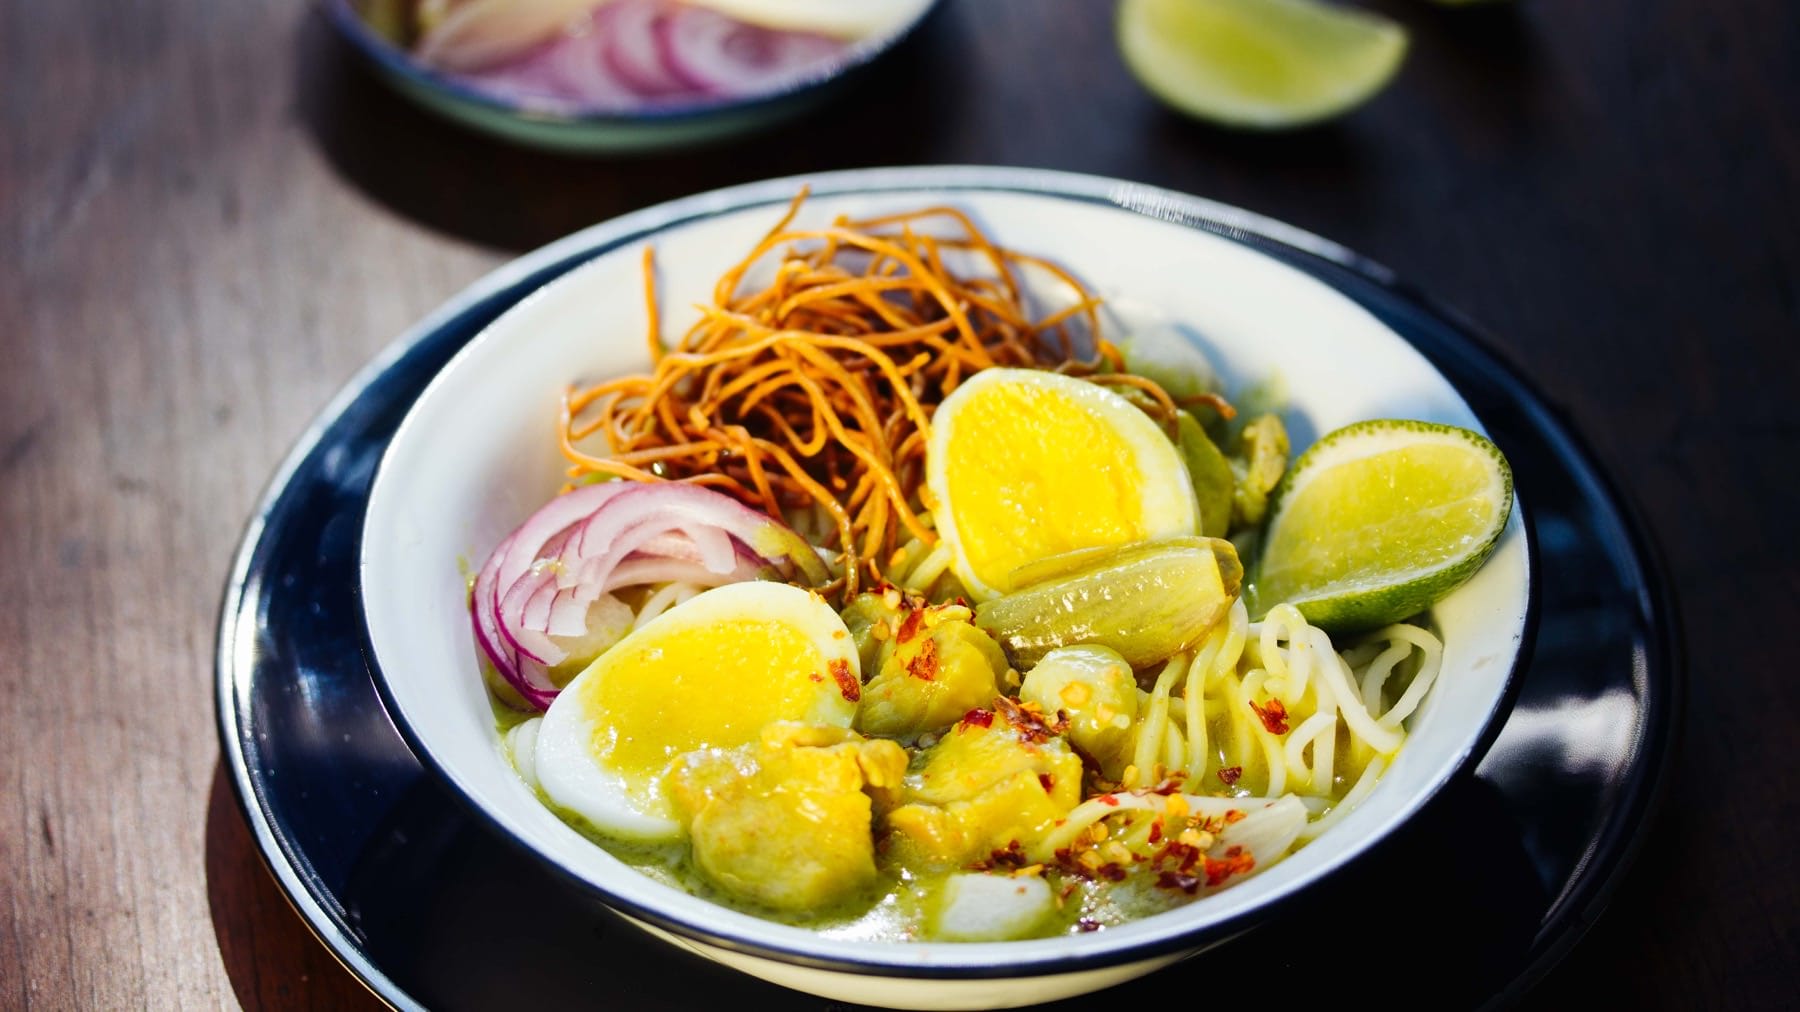 Burmesische Curry Nudelsuppe - Ohn No Khaut Swe